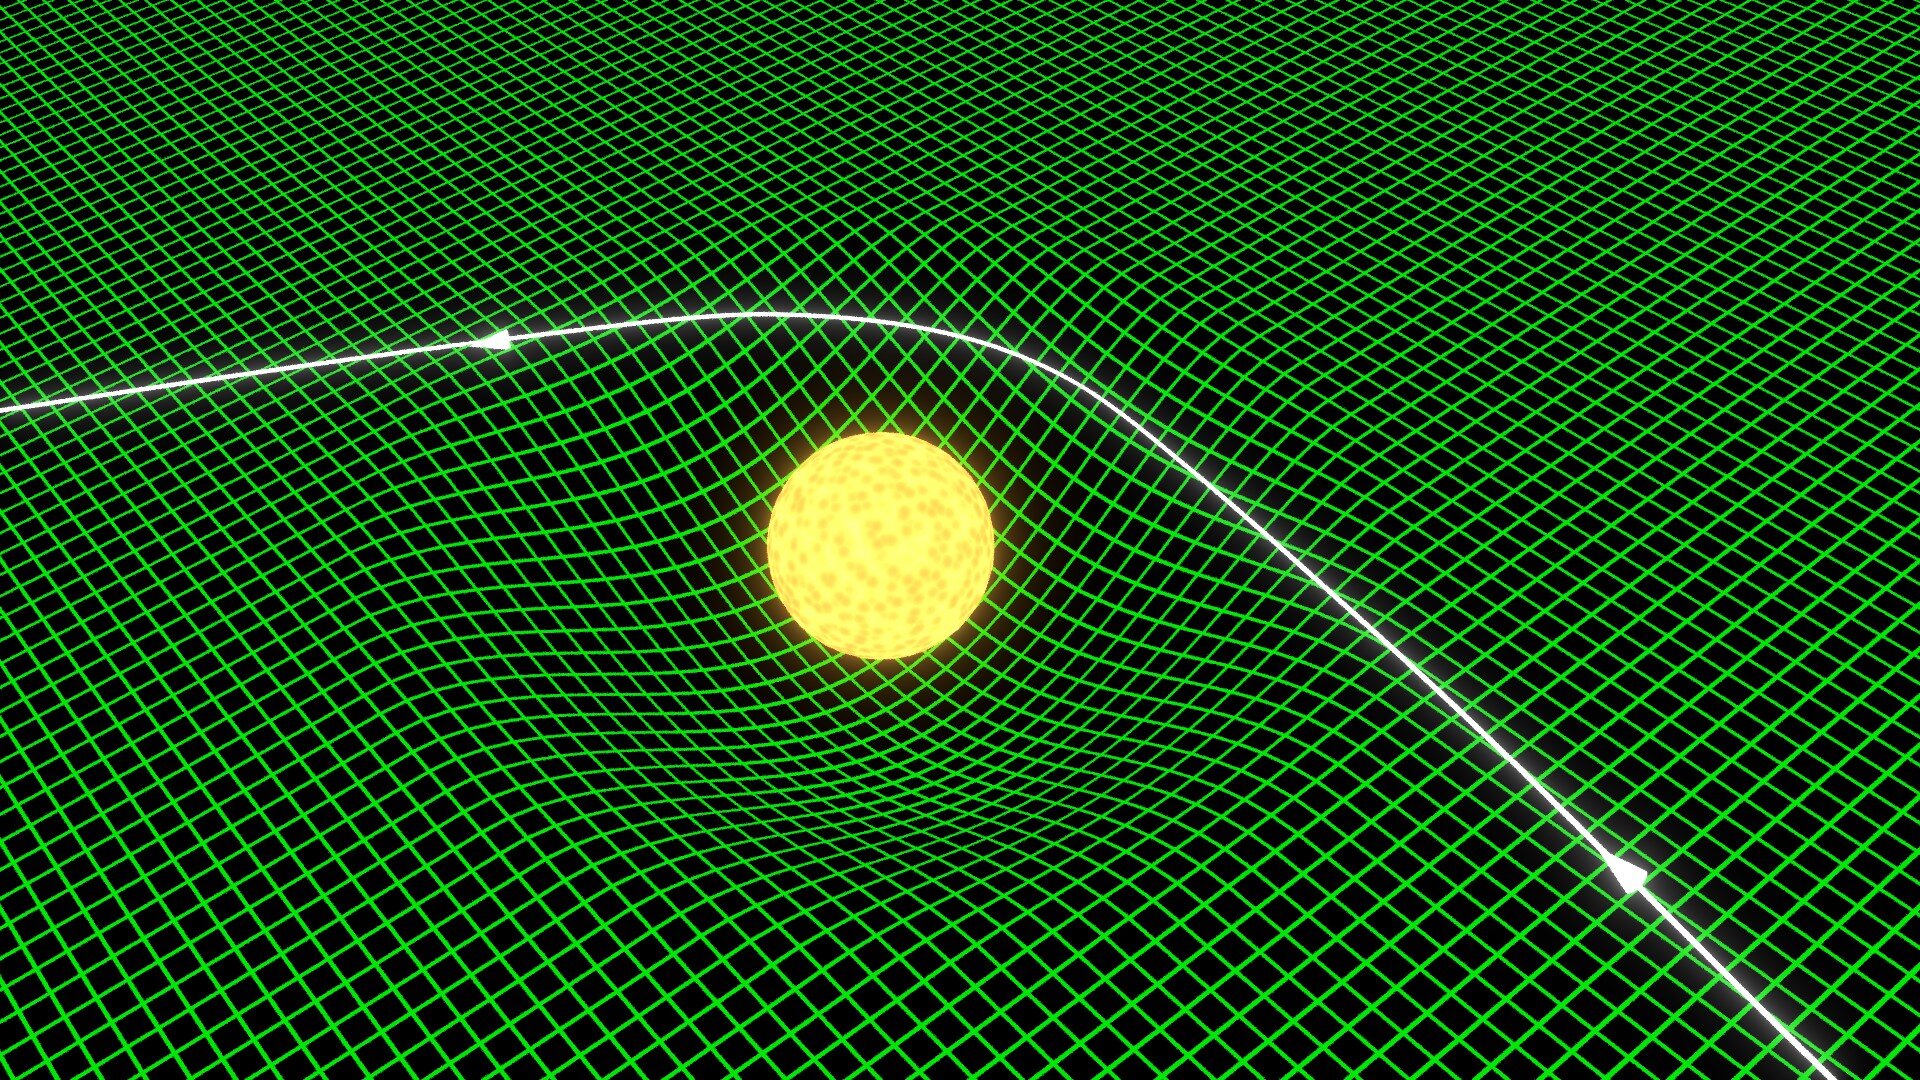 Rys. 4. Rysunek przedstawia symbolicznie czasoprzestrzeń, którą ugina znajdująca się na niej gwiazda. Powierzchnię czasoprzestrzeni zakratkowano na zielono dla łatwiejszej obserwacji. Promień świetlny porusza się po czasoprzestrzeni i gdy przechodzi przez wewnętrzną stronę ugiętego obszaru zmienia kierunek swojego ruchu. 